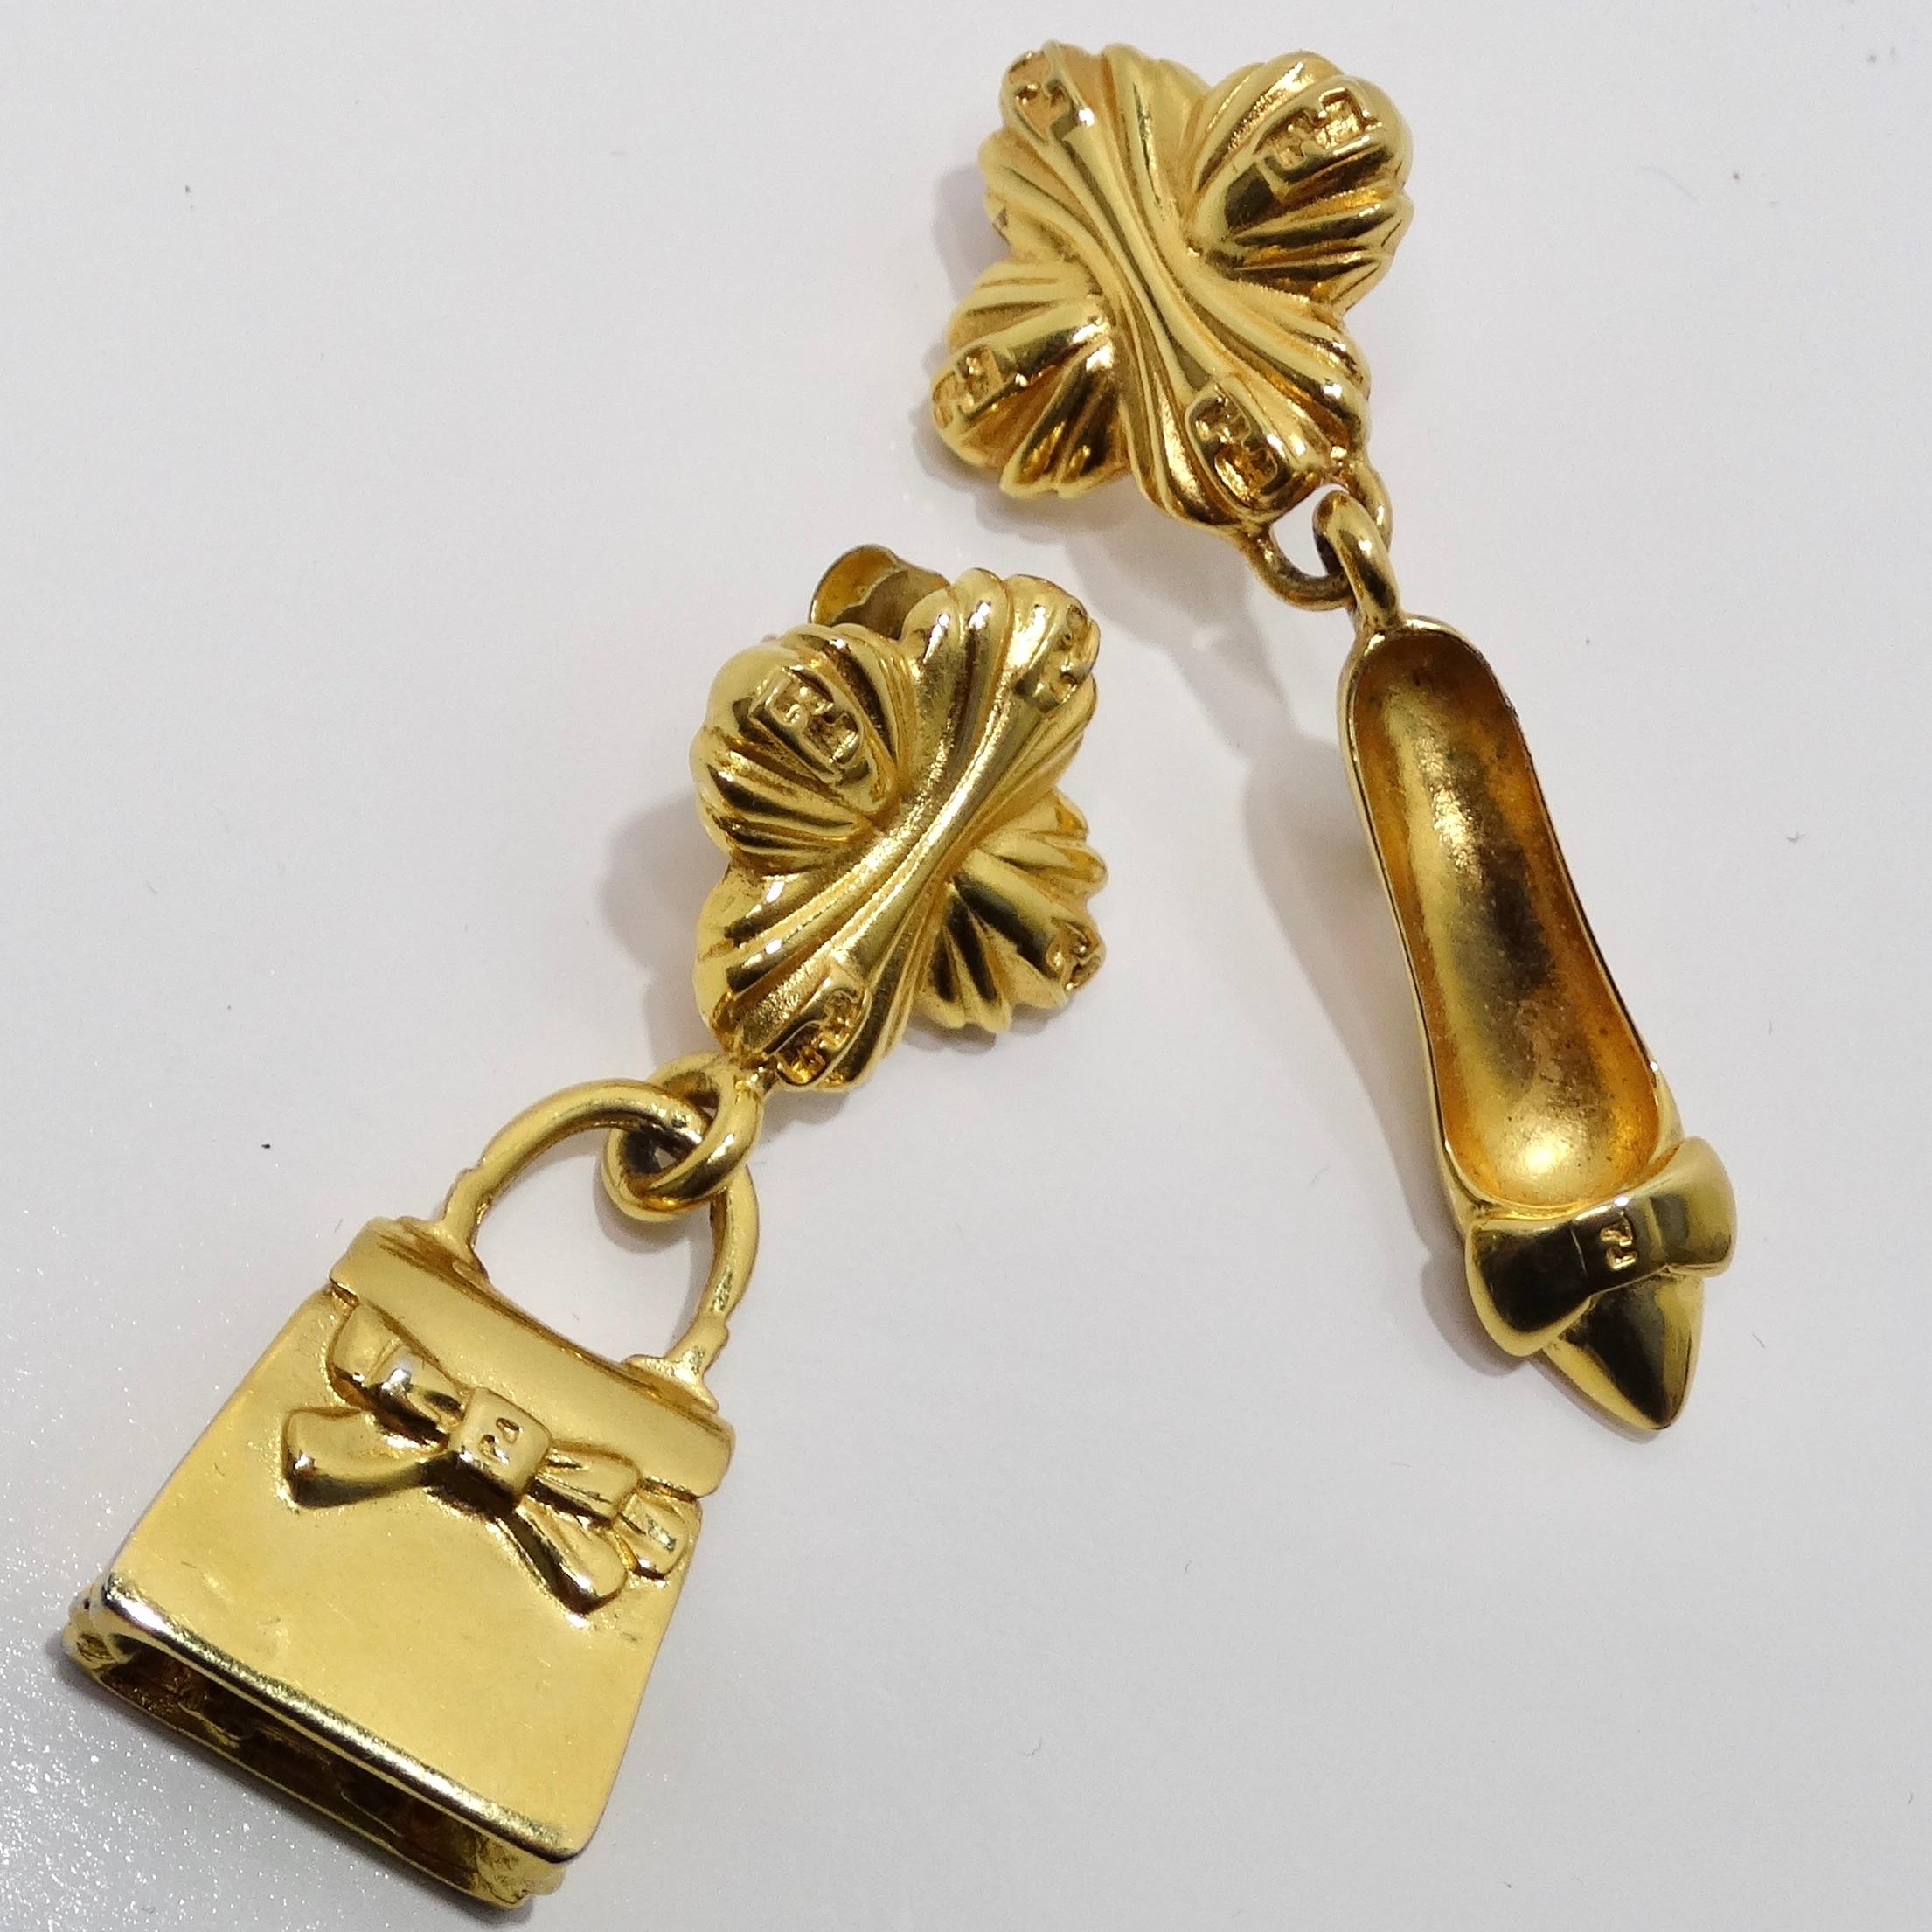 Wir präsentieren die Fendi 1980s Gold Tone Purse High Heel Earrings, ein verspieltes und stilvolles Accessoire, das die Essenz der ikonischen Designs von Fendi einfängt. Diese witzigen Ohrringe haben einen einzigartigen asymmetrischen Look und